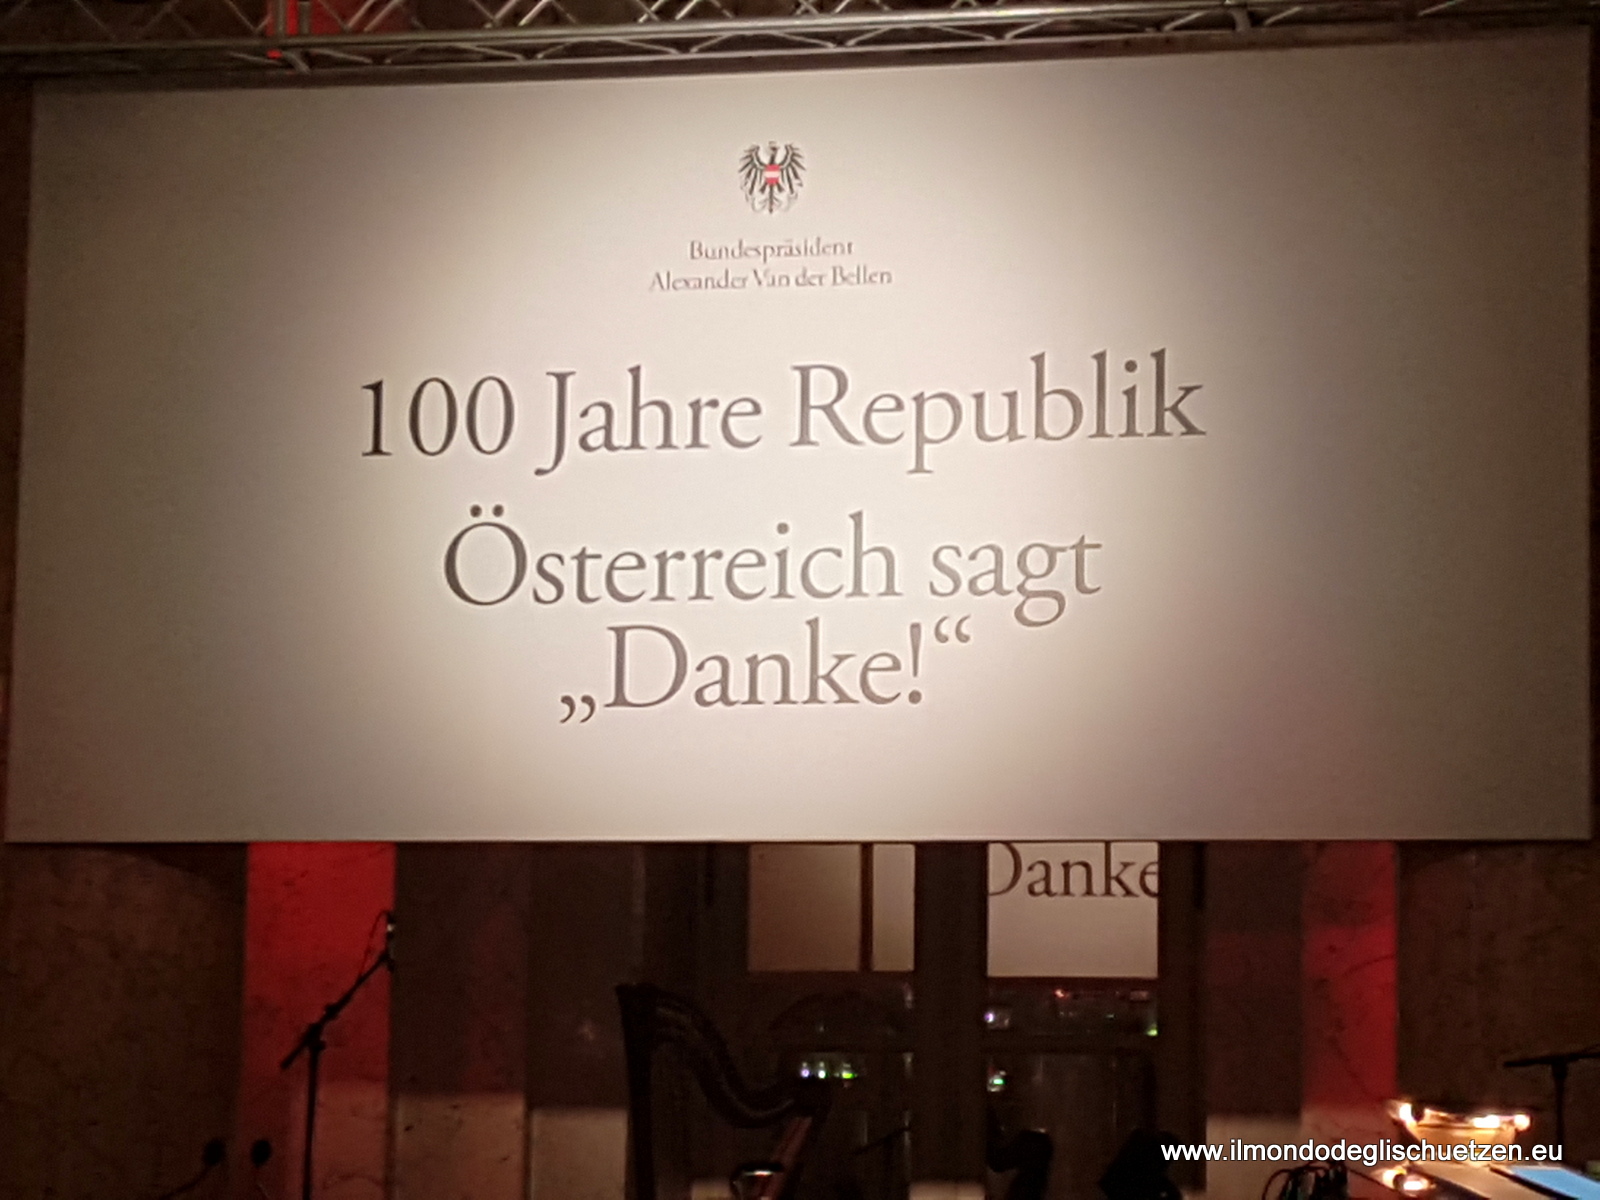 20181026_100 Jahre Republick-030jpg